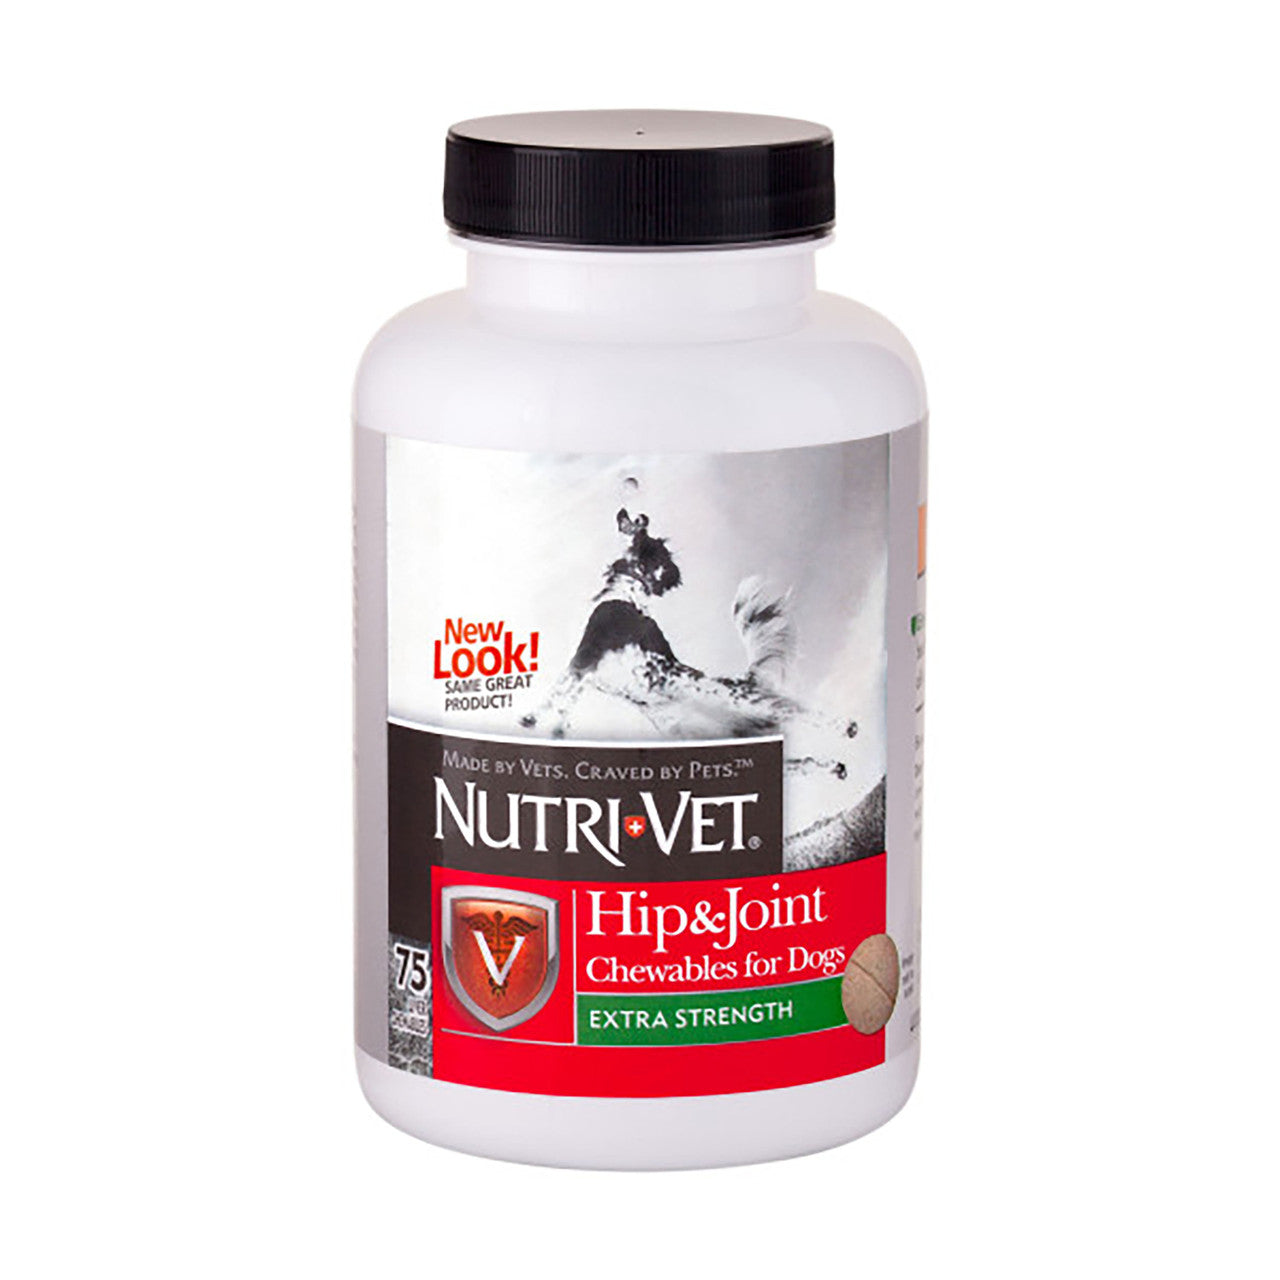 Nutri-Vet Hip & Joint Plus Liver Chewables 75 Count